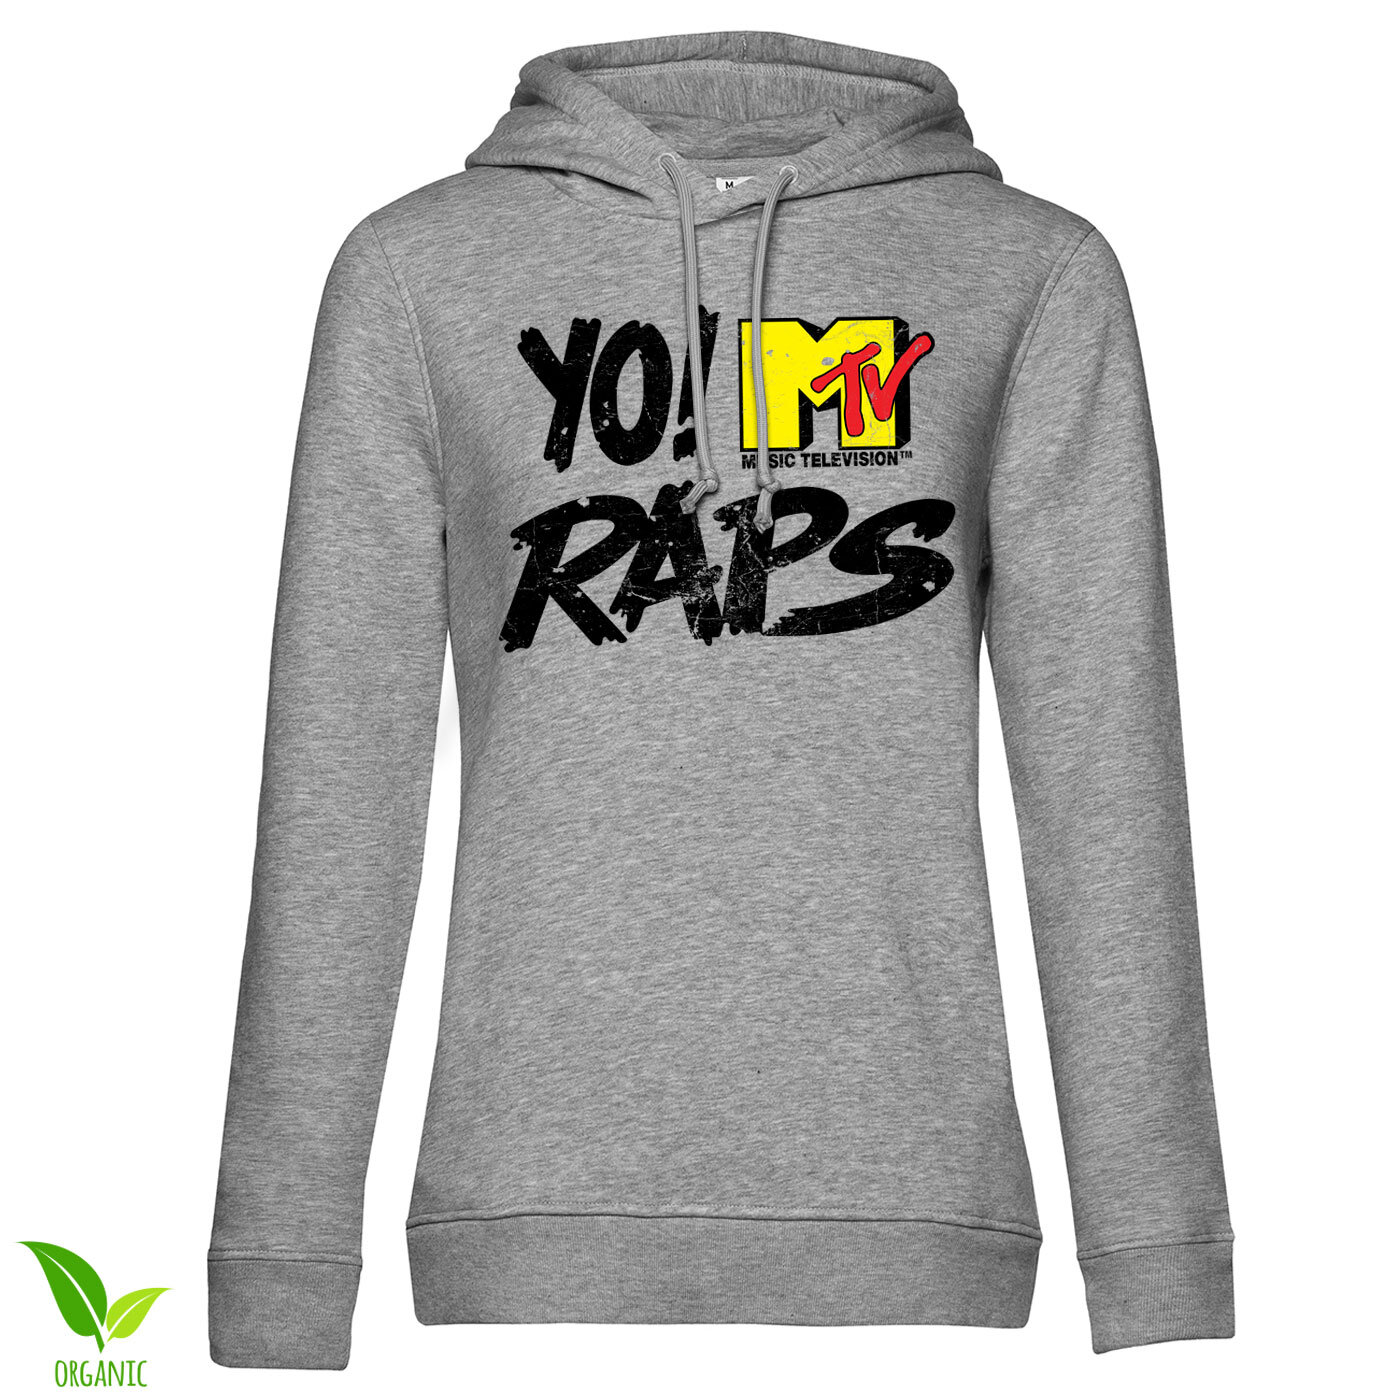 Yo! MTV Raps Distressed Logo Girls Hoodie